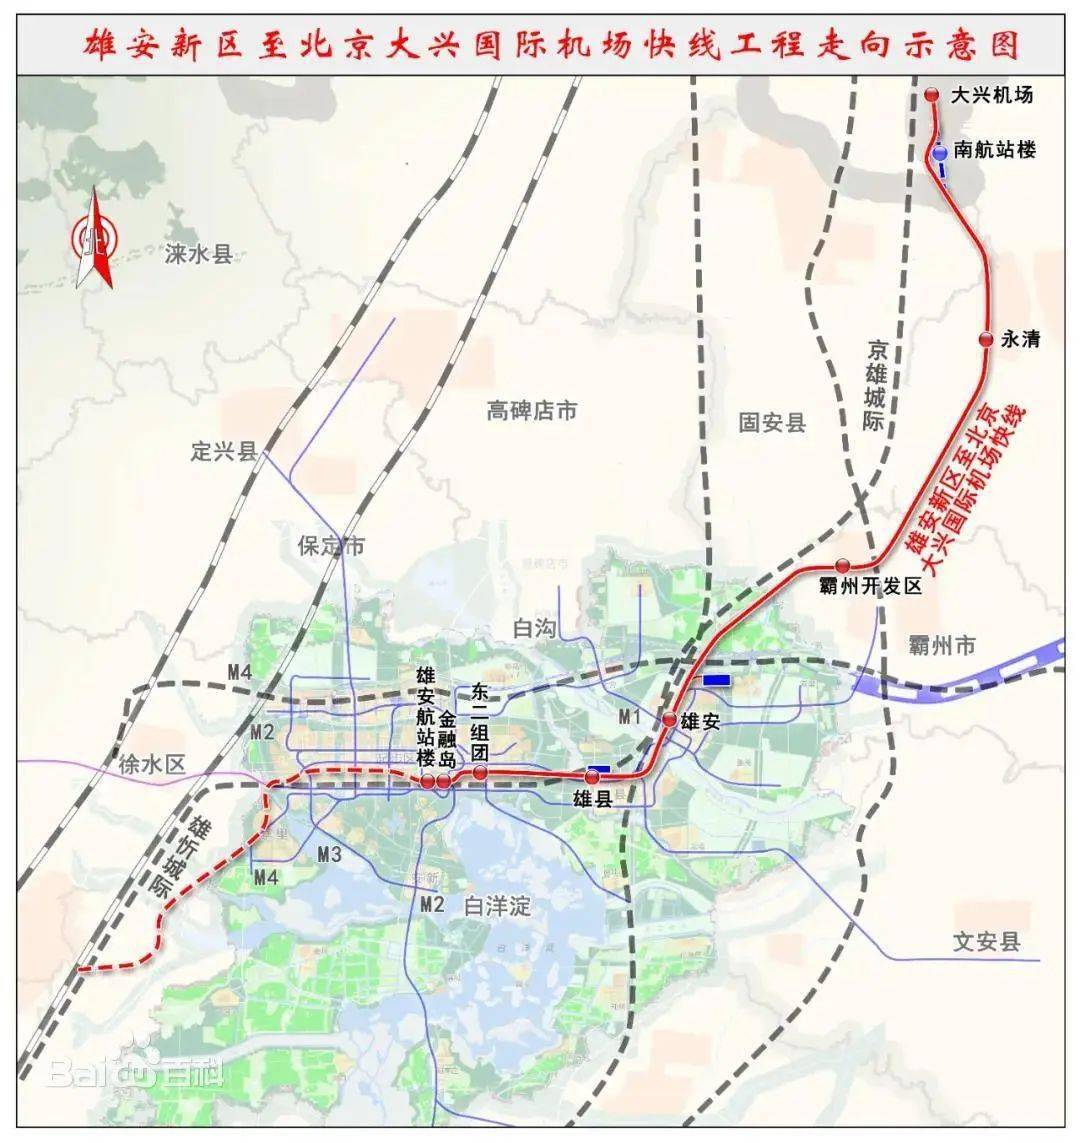 霸州R1线占地村庄图片